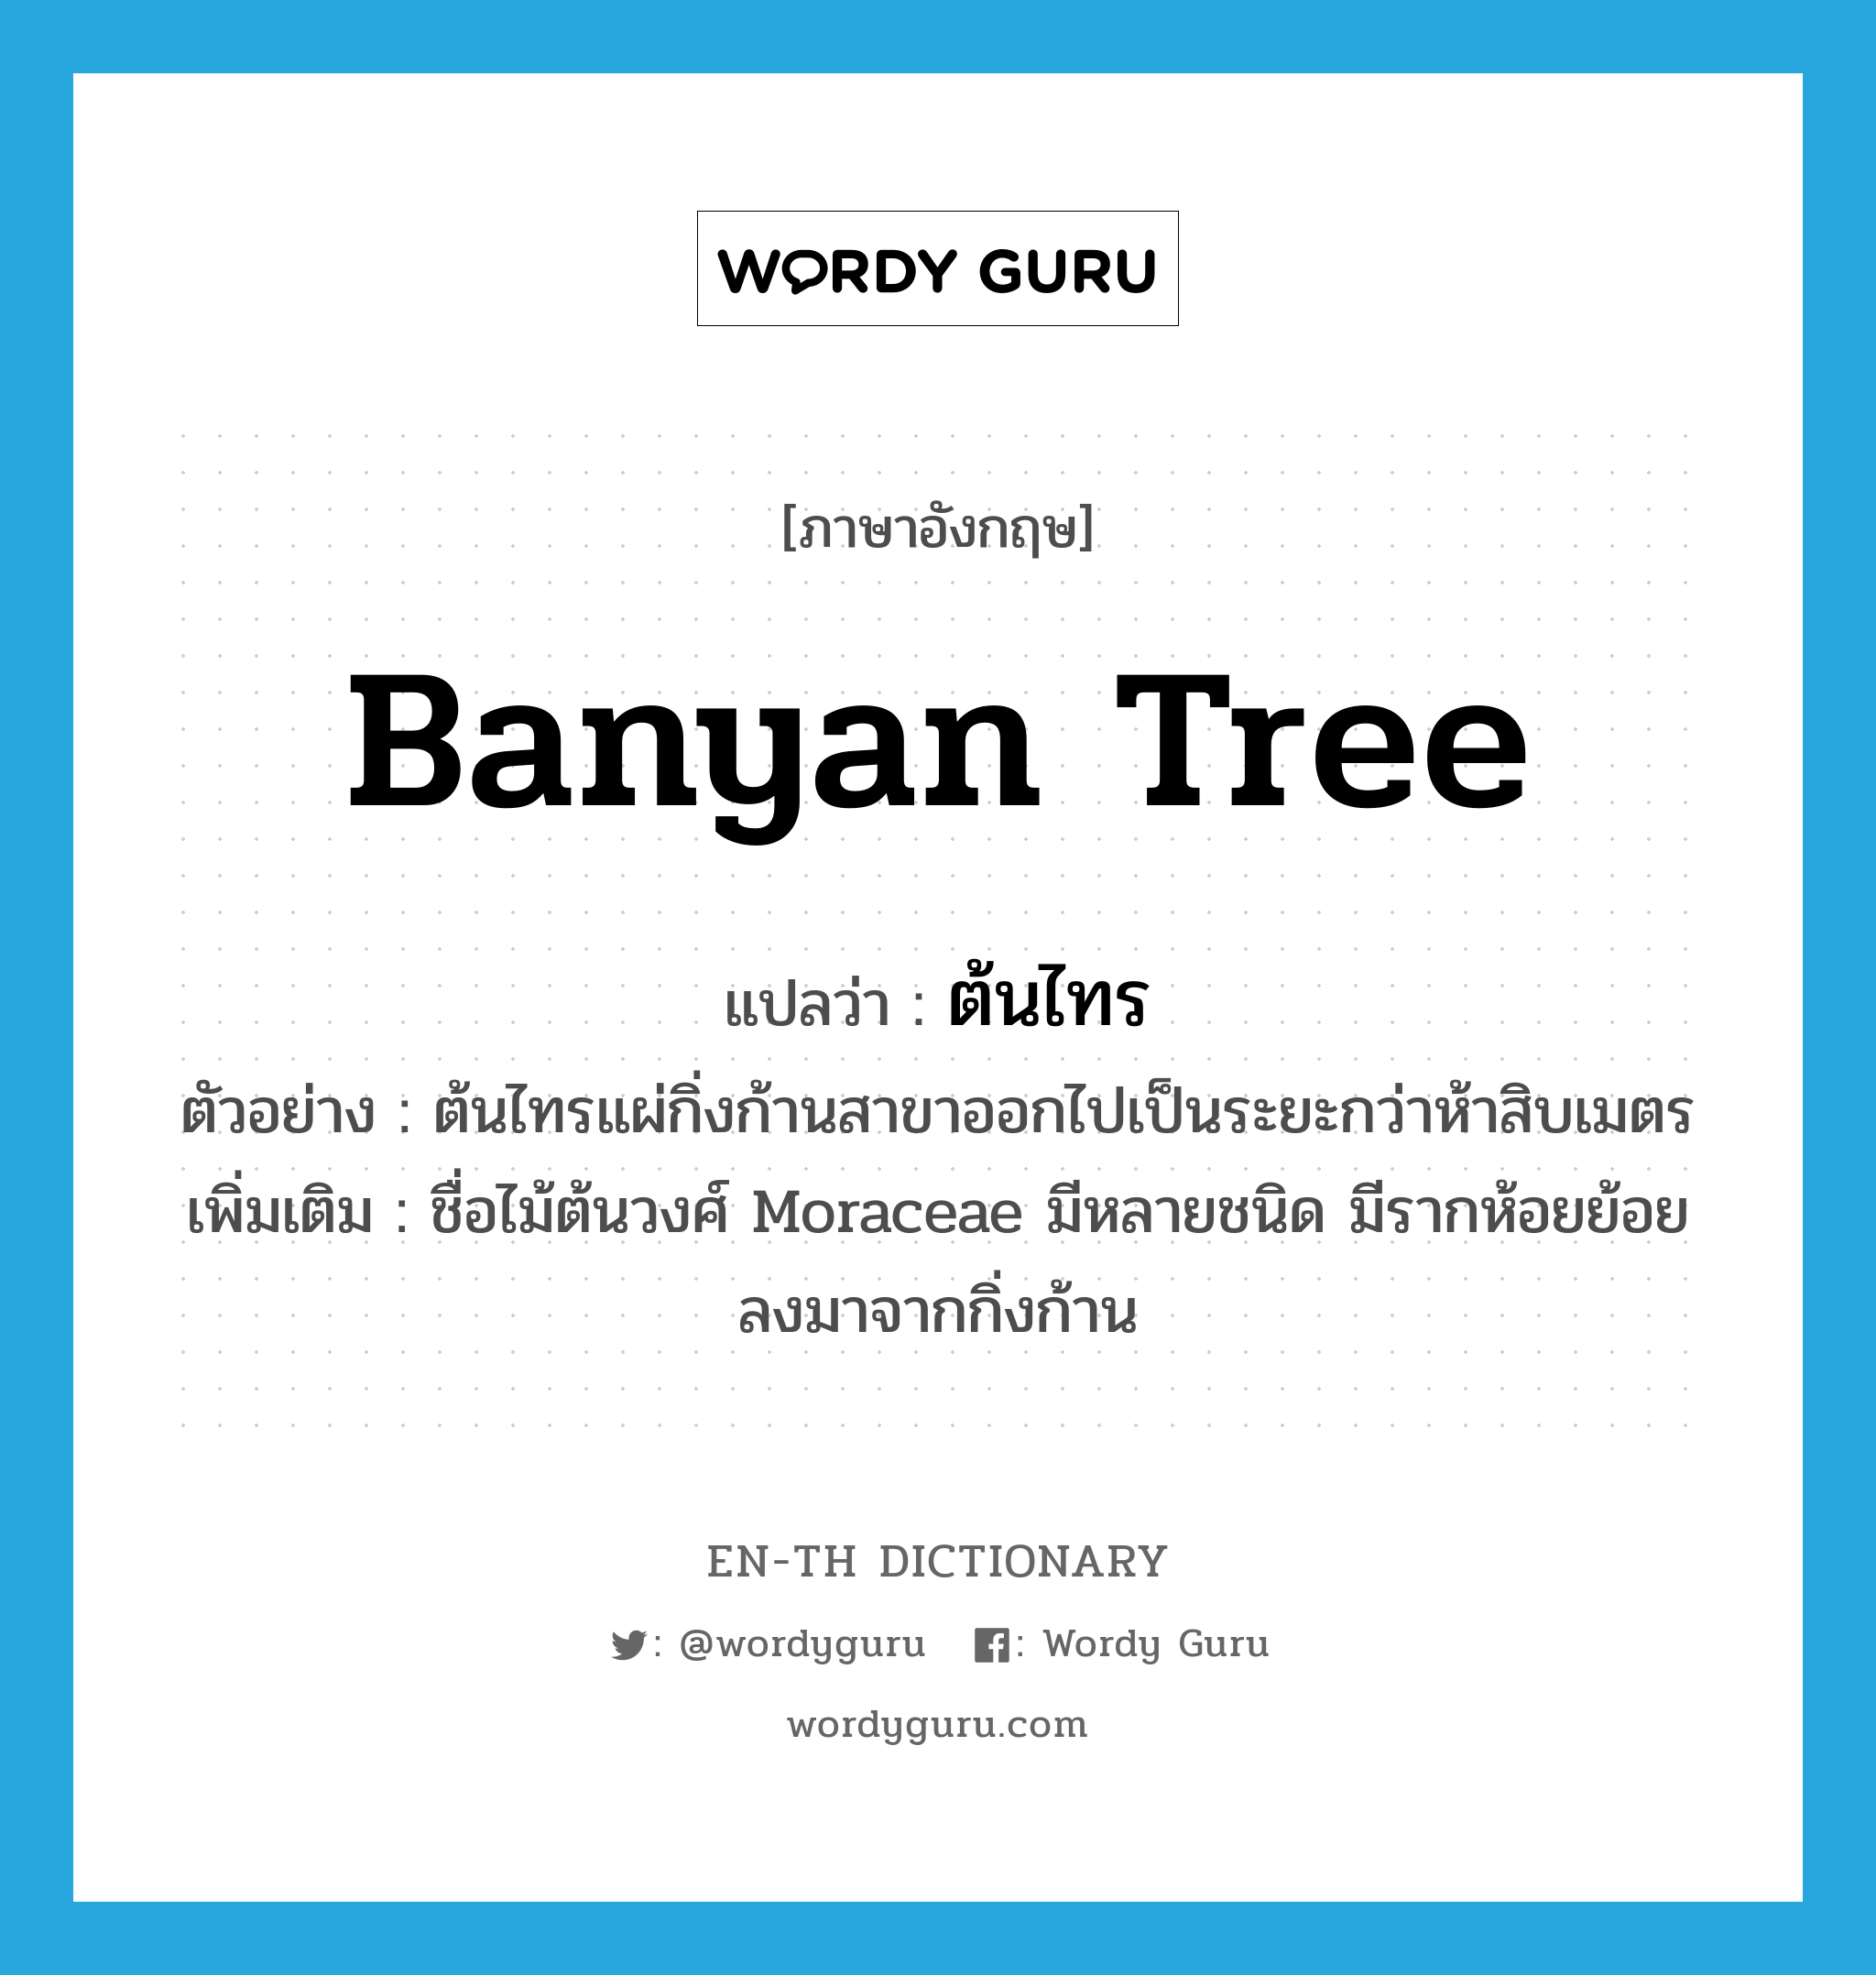 ต้นไทร ภาษาอังกฤษ?, คำศัพท์ภาษาอังกฤษ ต้นไทร แปลว่า banyan tree ประเภท N ตัวอย่าง ต้นไทรแผ่กิ่งก้านสาขาออกไปเป็นระยะกว่าห้าสิบเมตร เพิ่มเติม ชื่อไม้ต้นวงศ์ Moraceae มีหลายชนิด มีรากห้อยย้อยลงมาจากกิ่งก้าน หมวด N